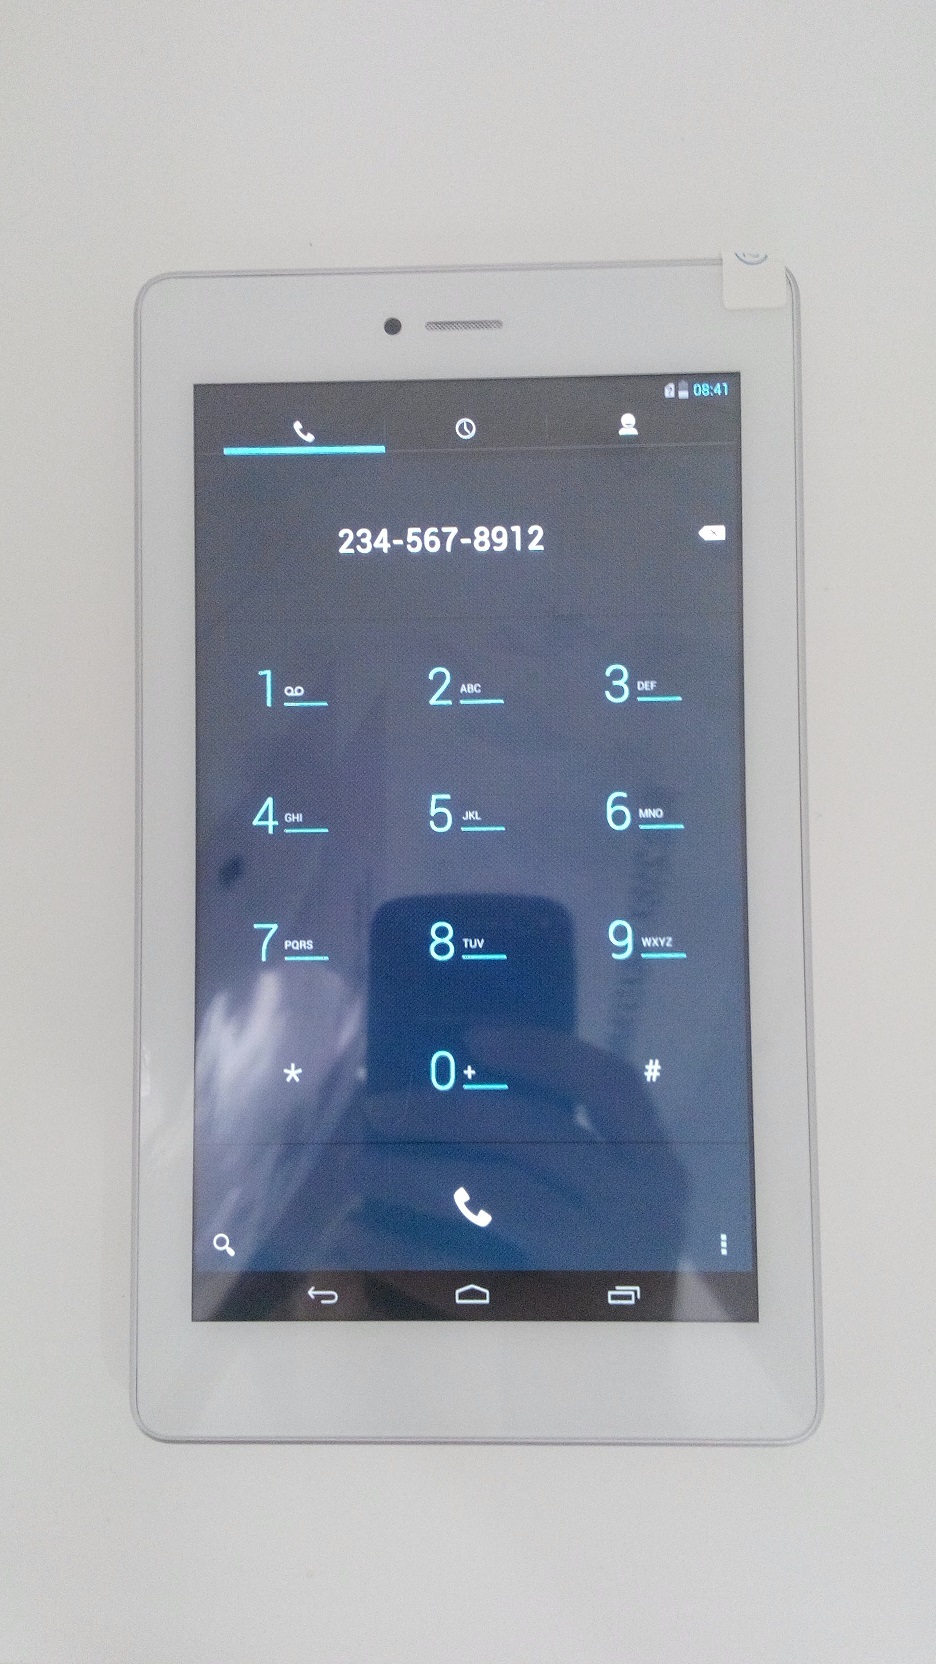 Reeder A7iS Telefon Özelliğini Açma reeder a7is telefon Özelliğini açma Reeder A7iS Telefon Özelliğini Açma 2f2bd7fc3faa69413466d0e84a9f20d3